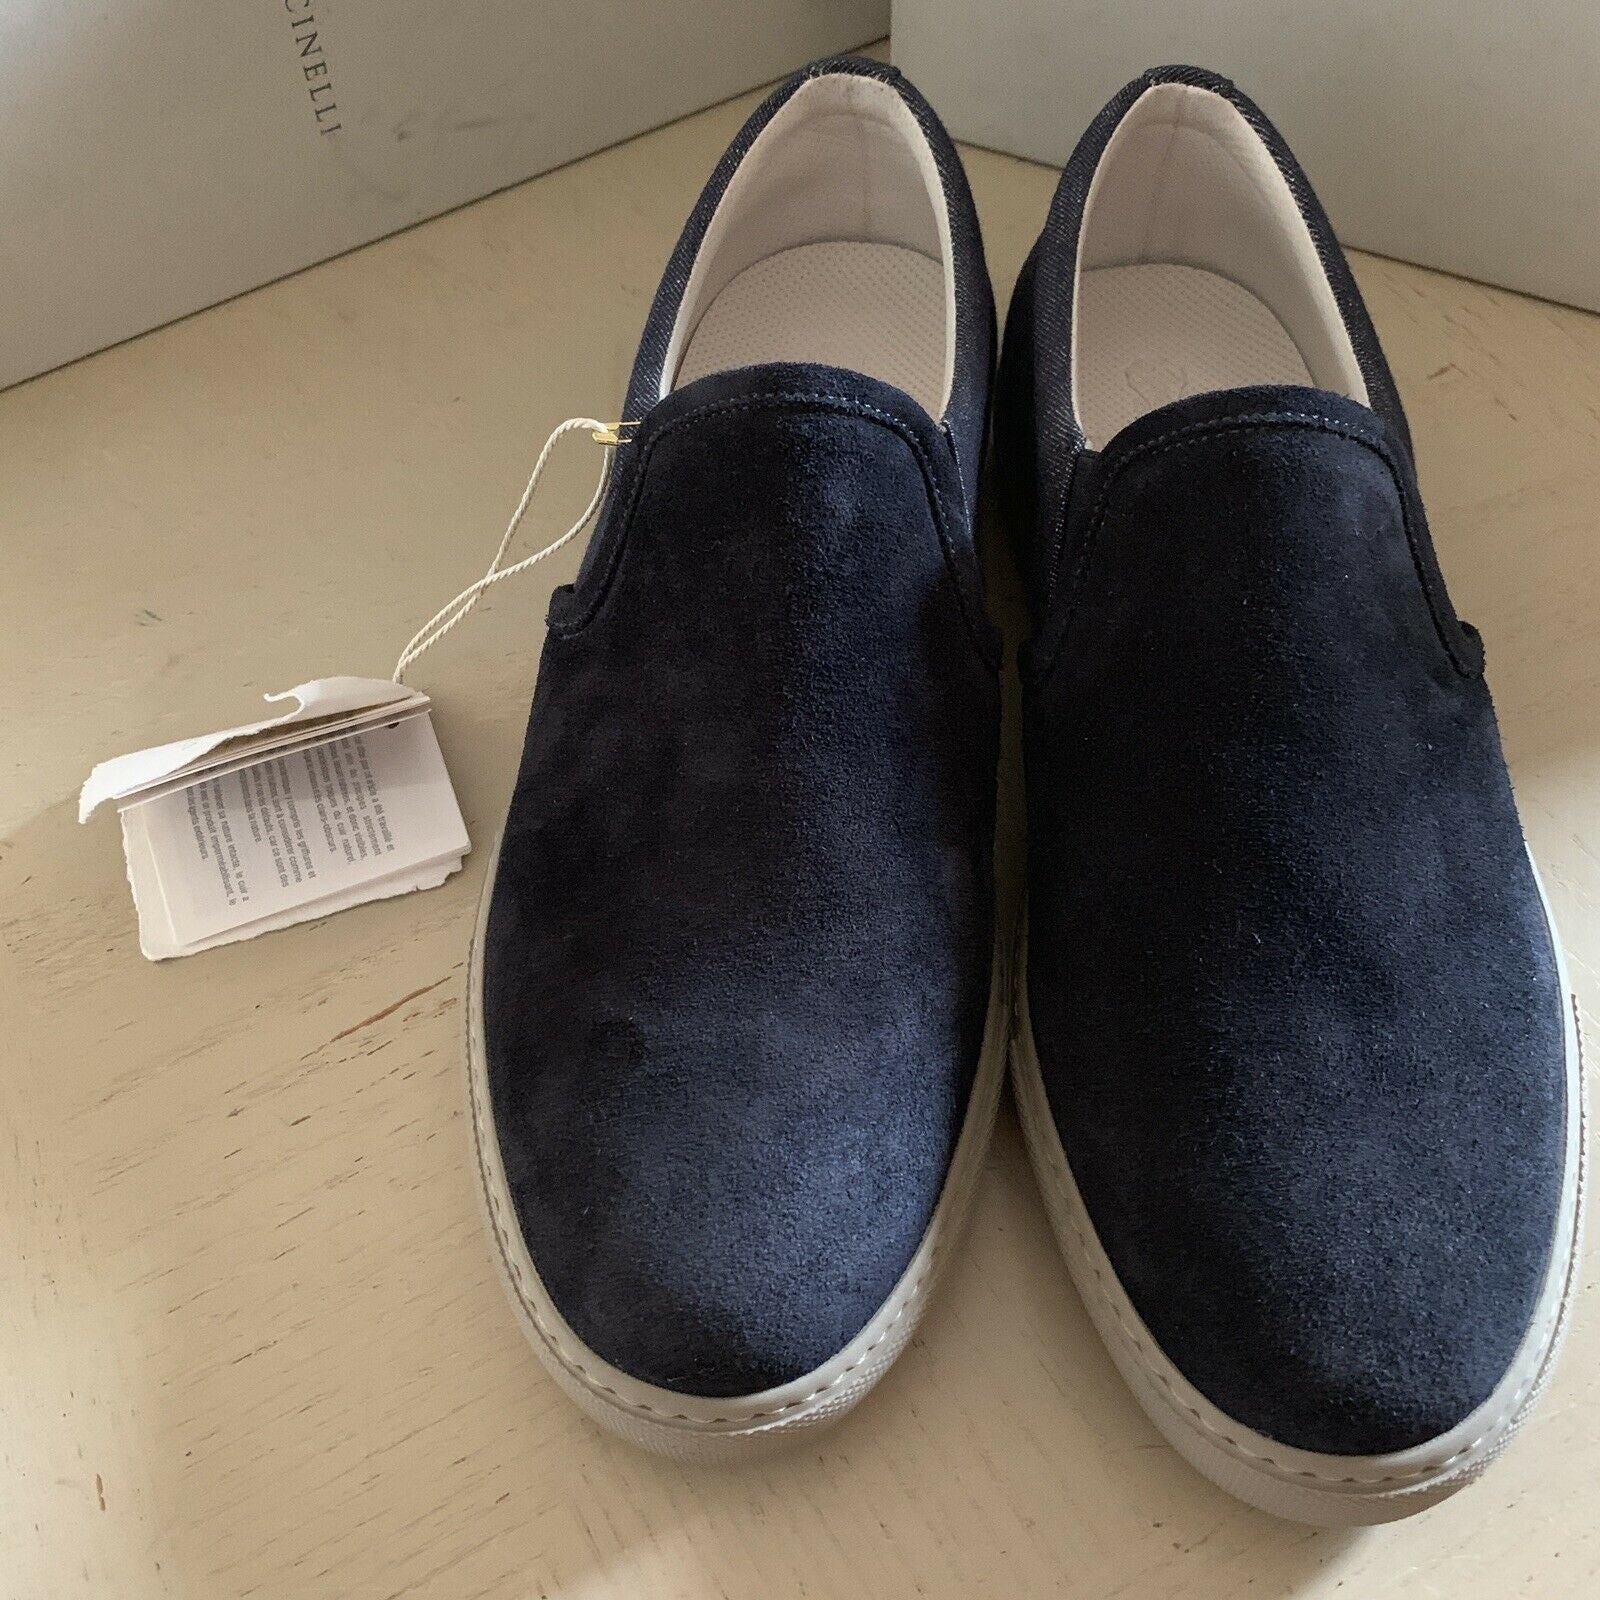 Новые мужские кроссовки/лоферы Brunello Cucinelli стоимостью 754 доллара США/42 ЕС Цвет Синий 9 США/42 ЕС